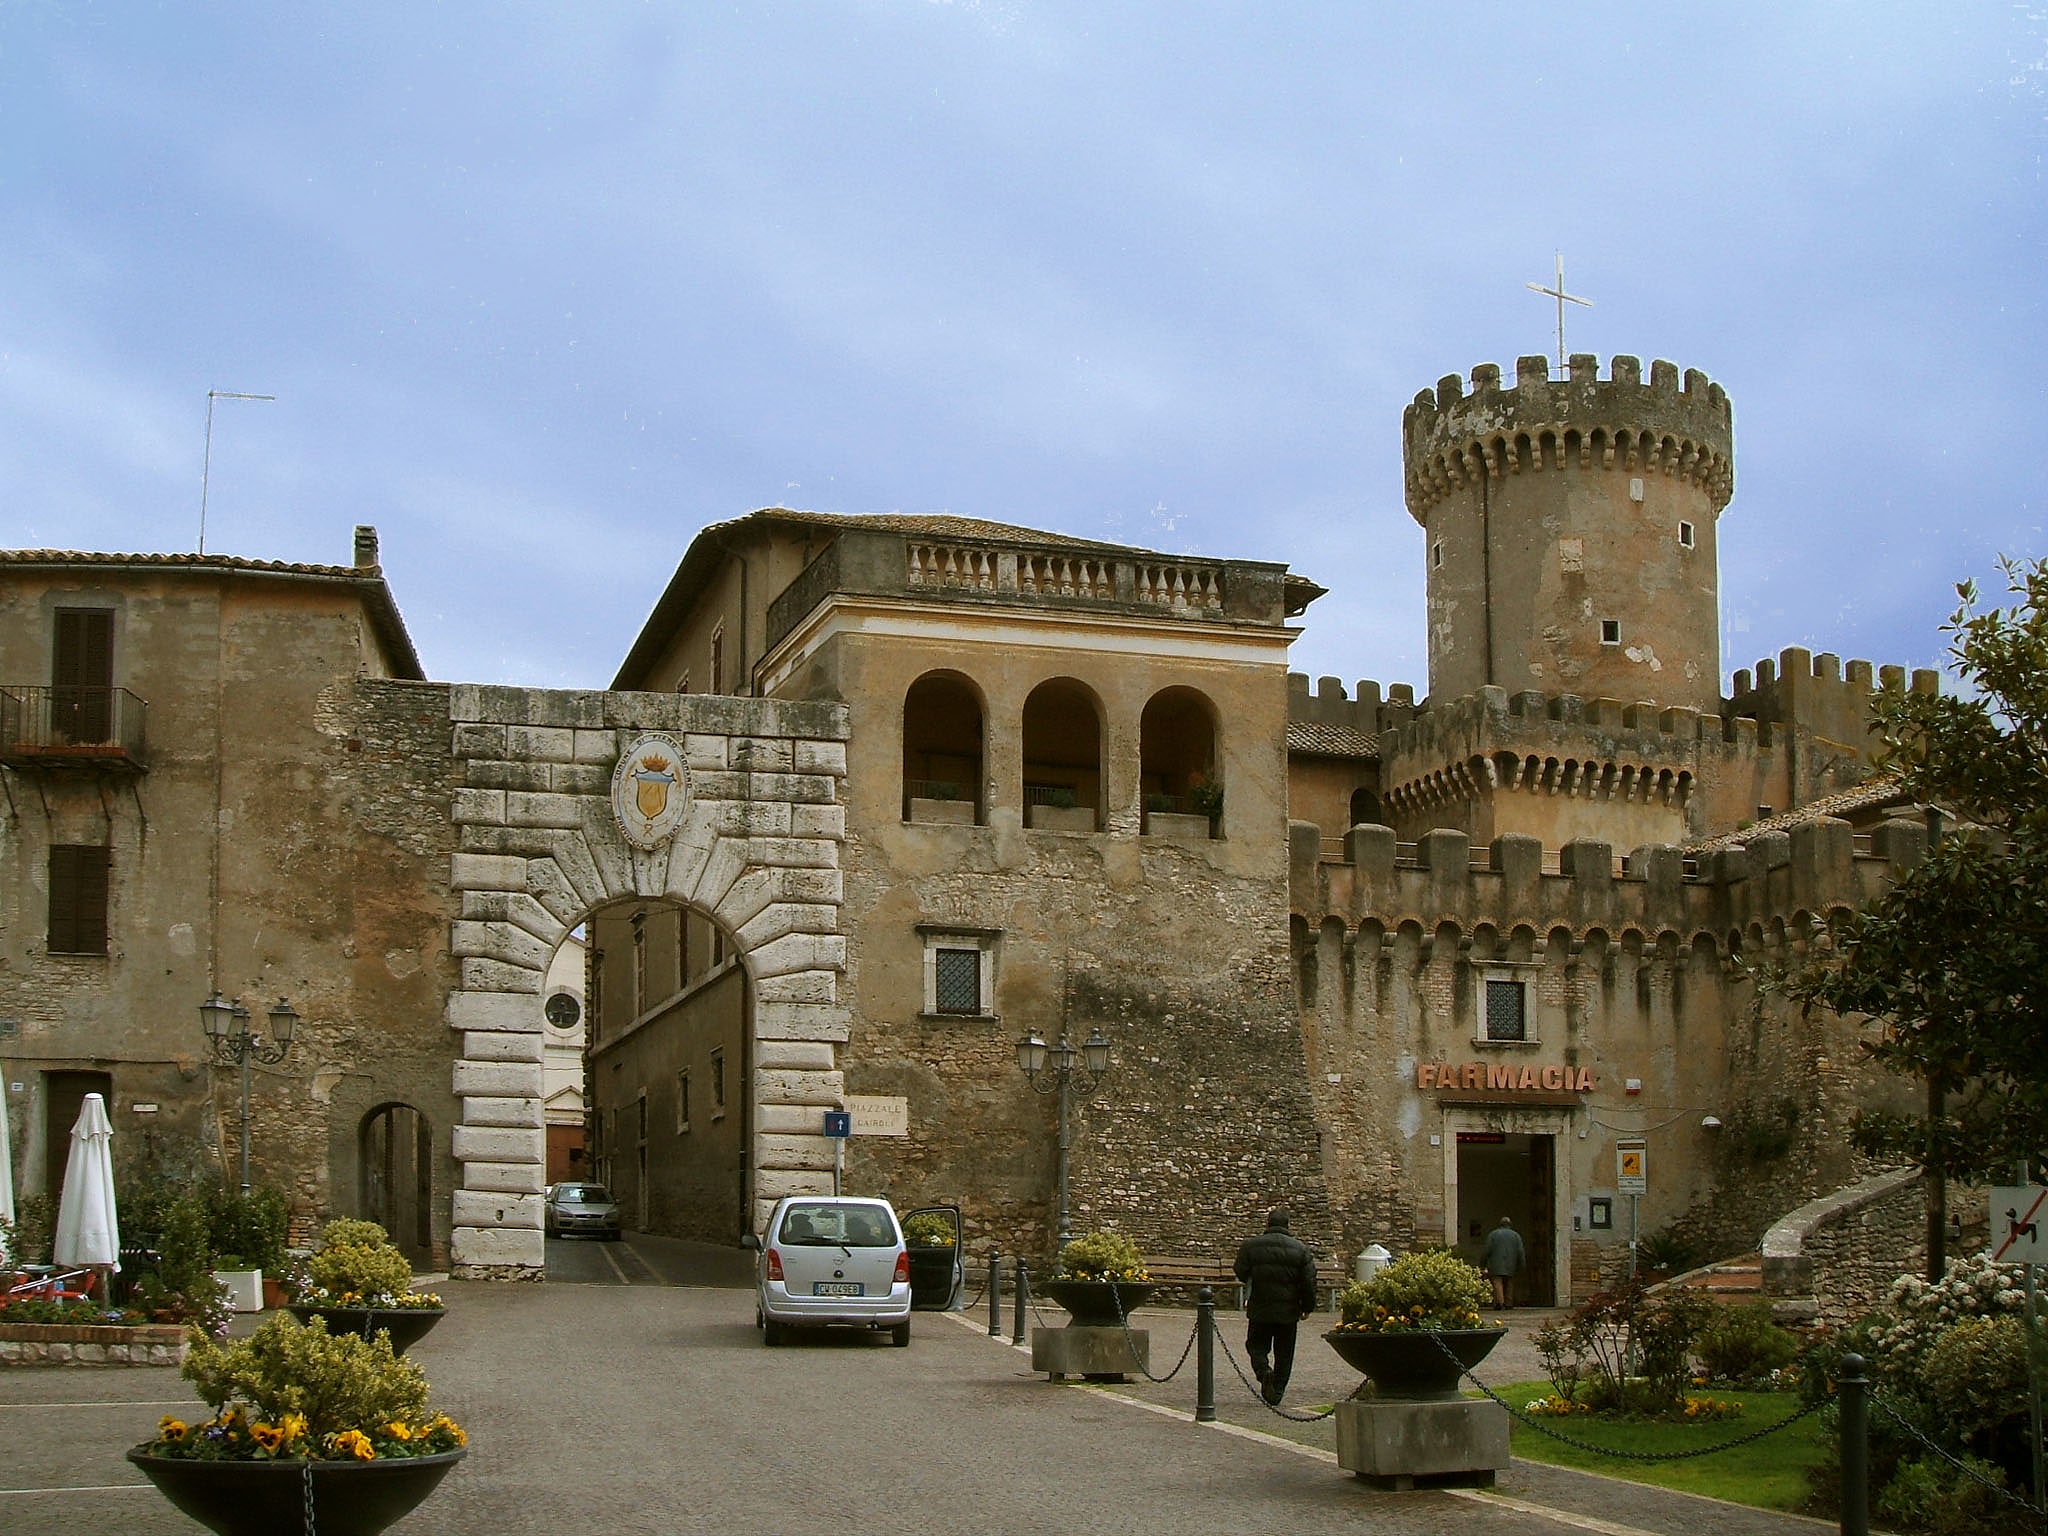 Fiano Romano, Italy